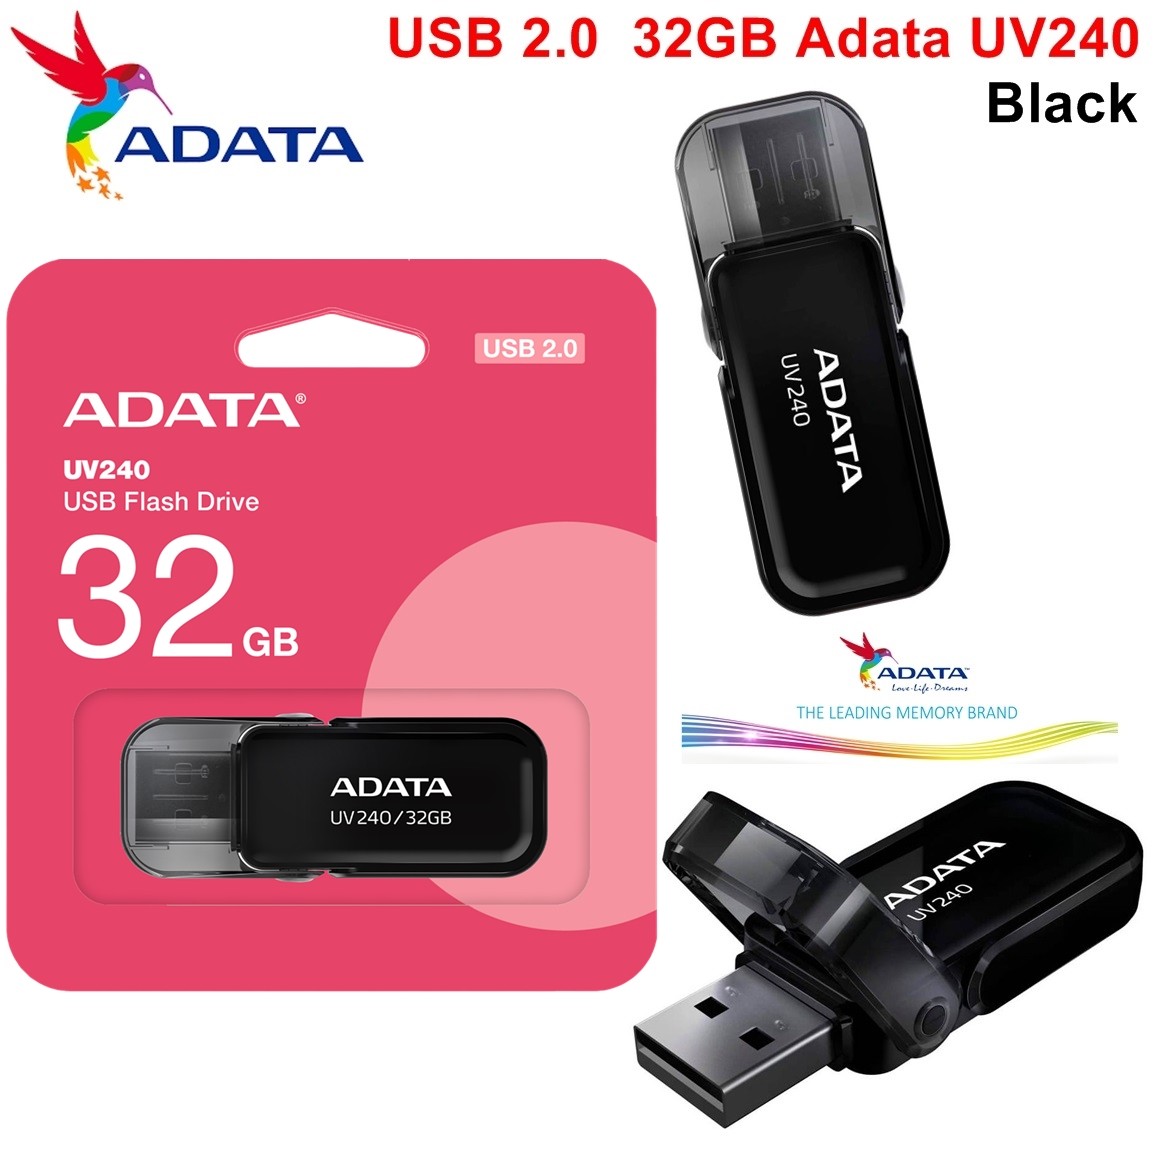 USB 2.0  32GB Adata UV240 Black